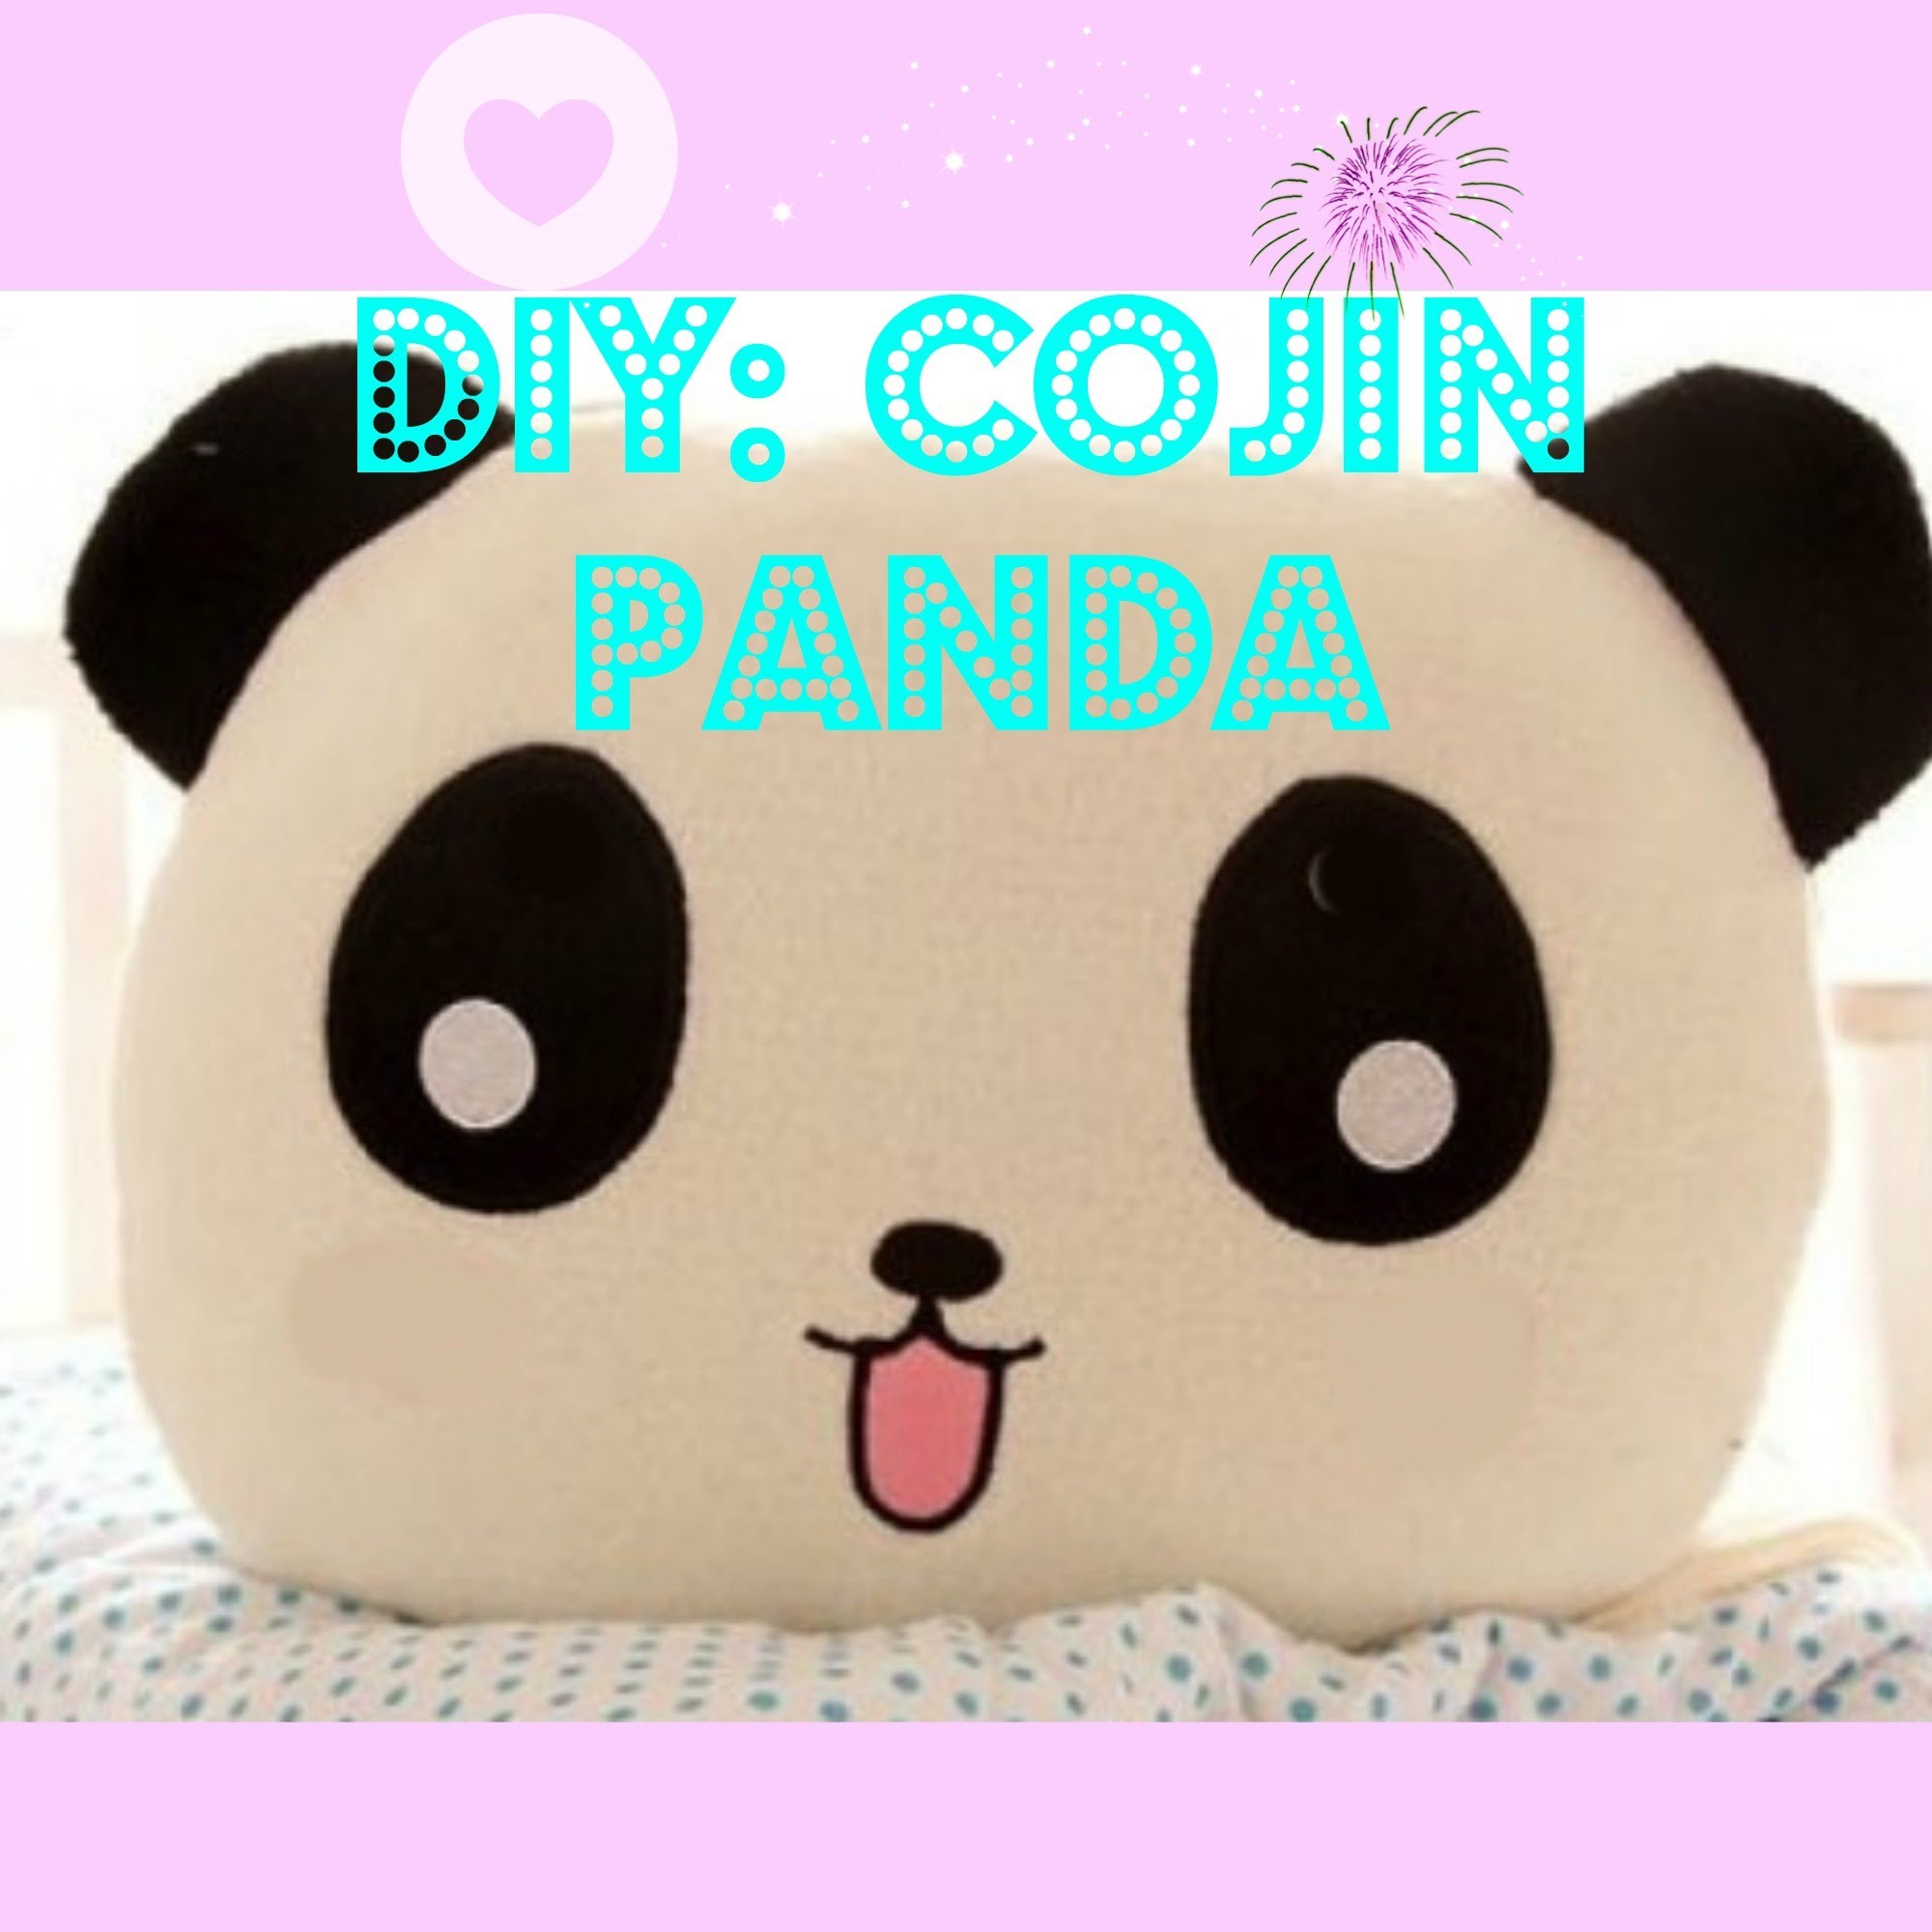 DIY: Cojin Panda | Panda Pillow | Life Dreams